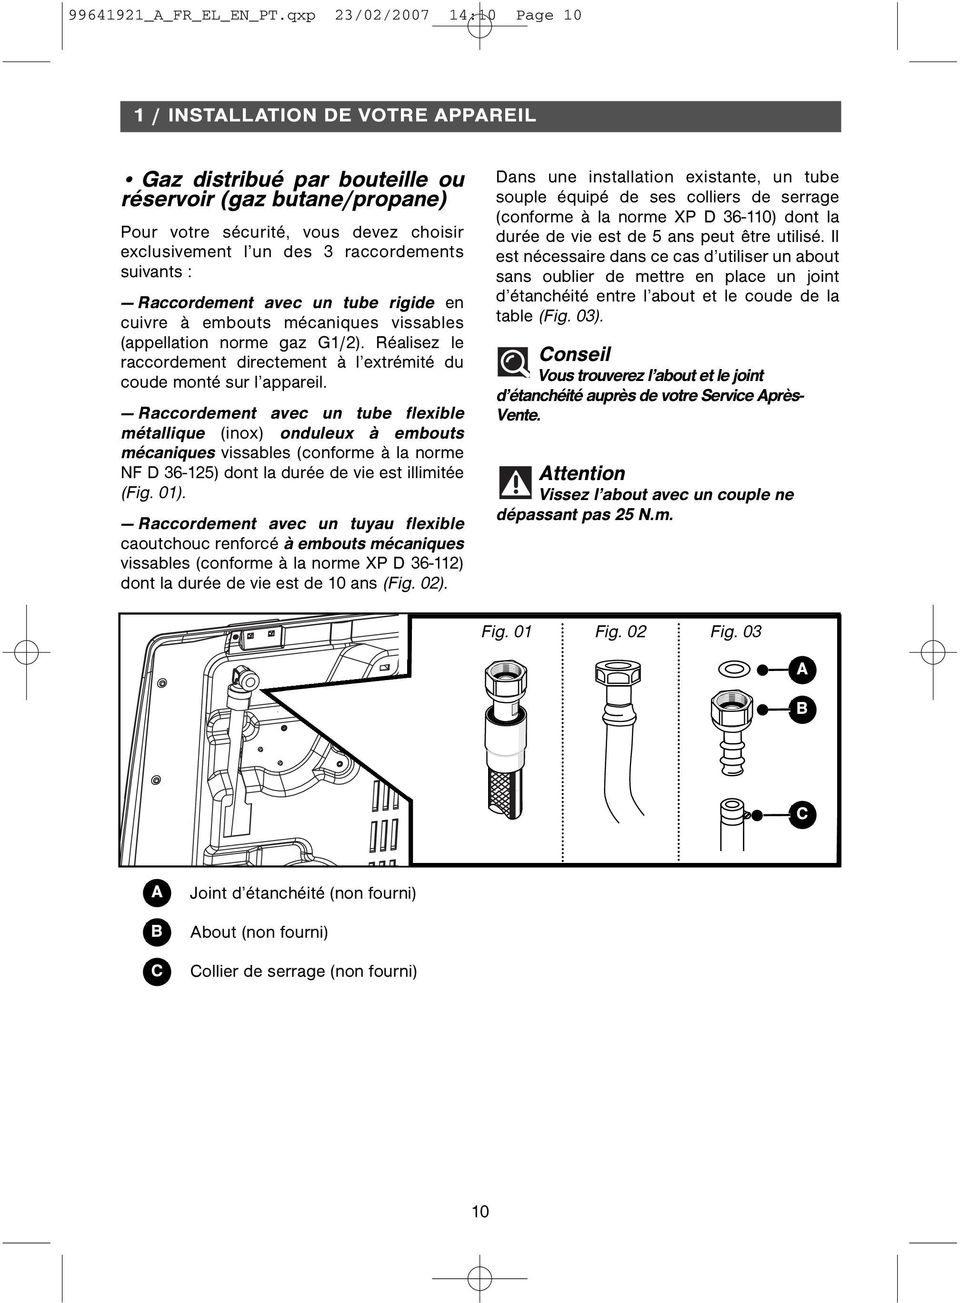 raccordements suivants : Raccordement avec un tube rigide en cuivre à embouts mécaniques vissables (appellation norme gaz G1/2).